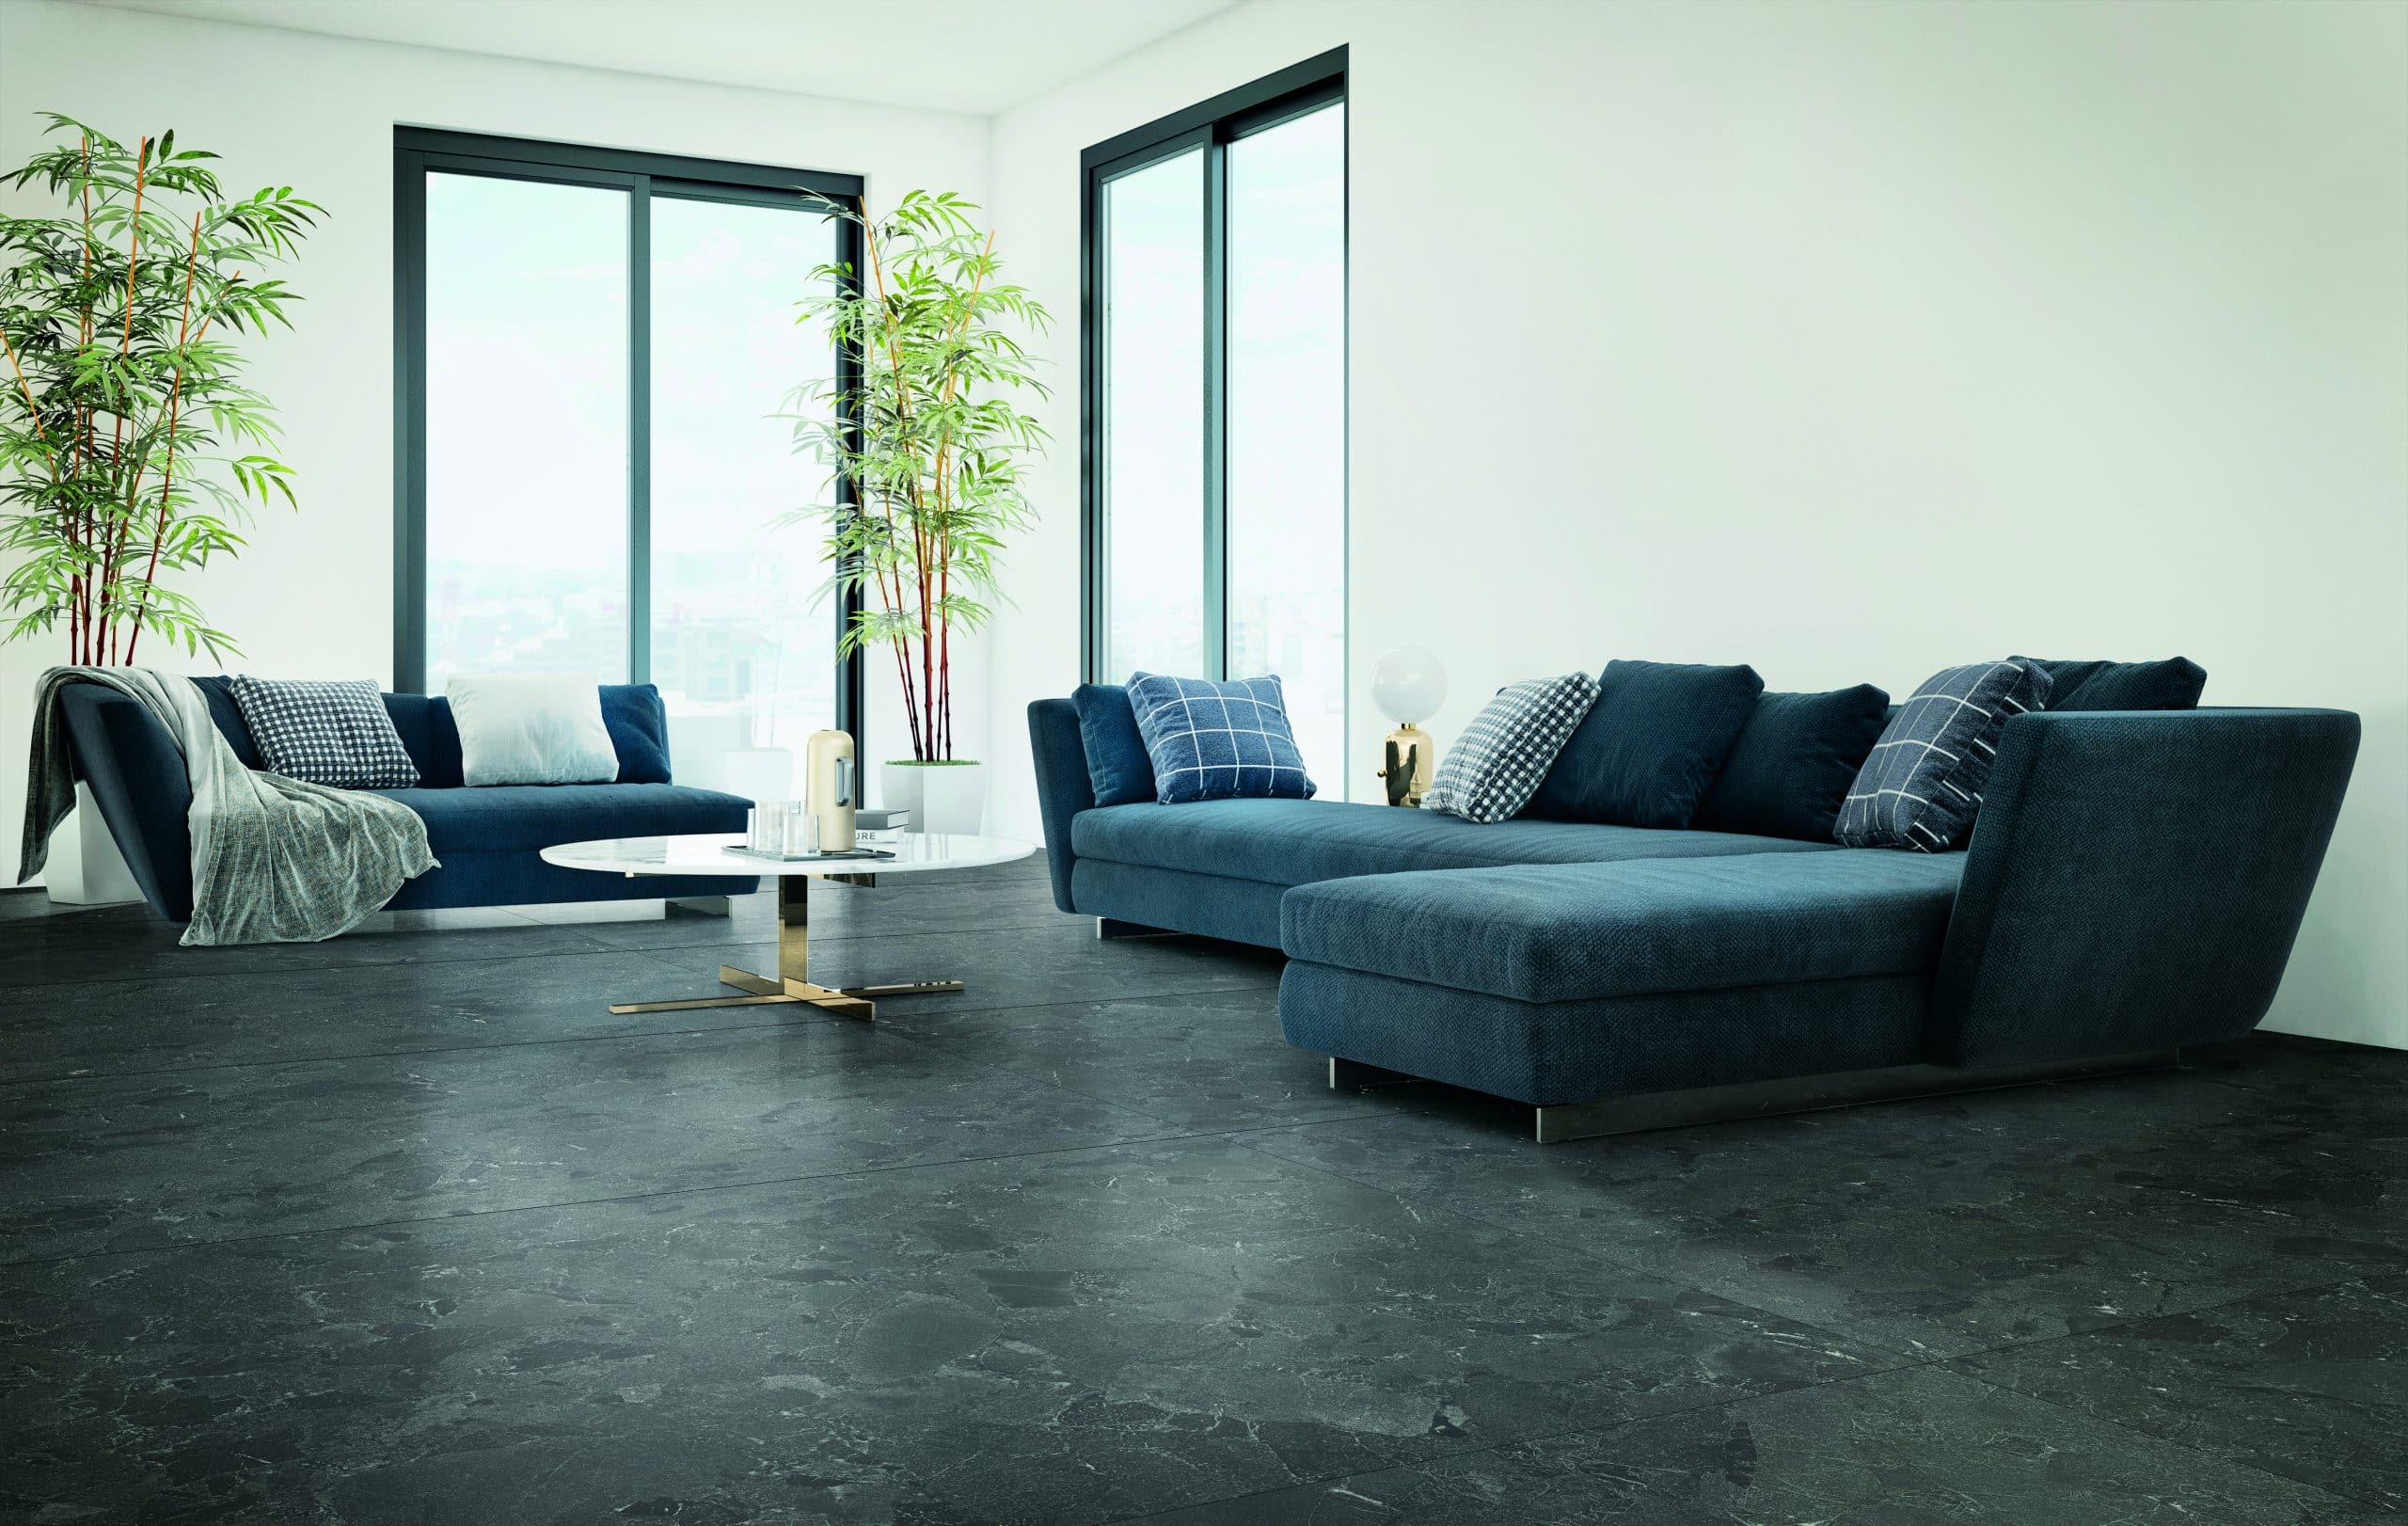 Fliesendorf zeigt ein mit blauen Sofas eingerichtets Wohnzimmer mit zwei hohen Fenstern und dunklem marmorierem Boden.